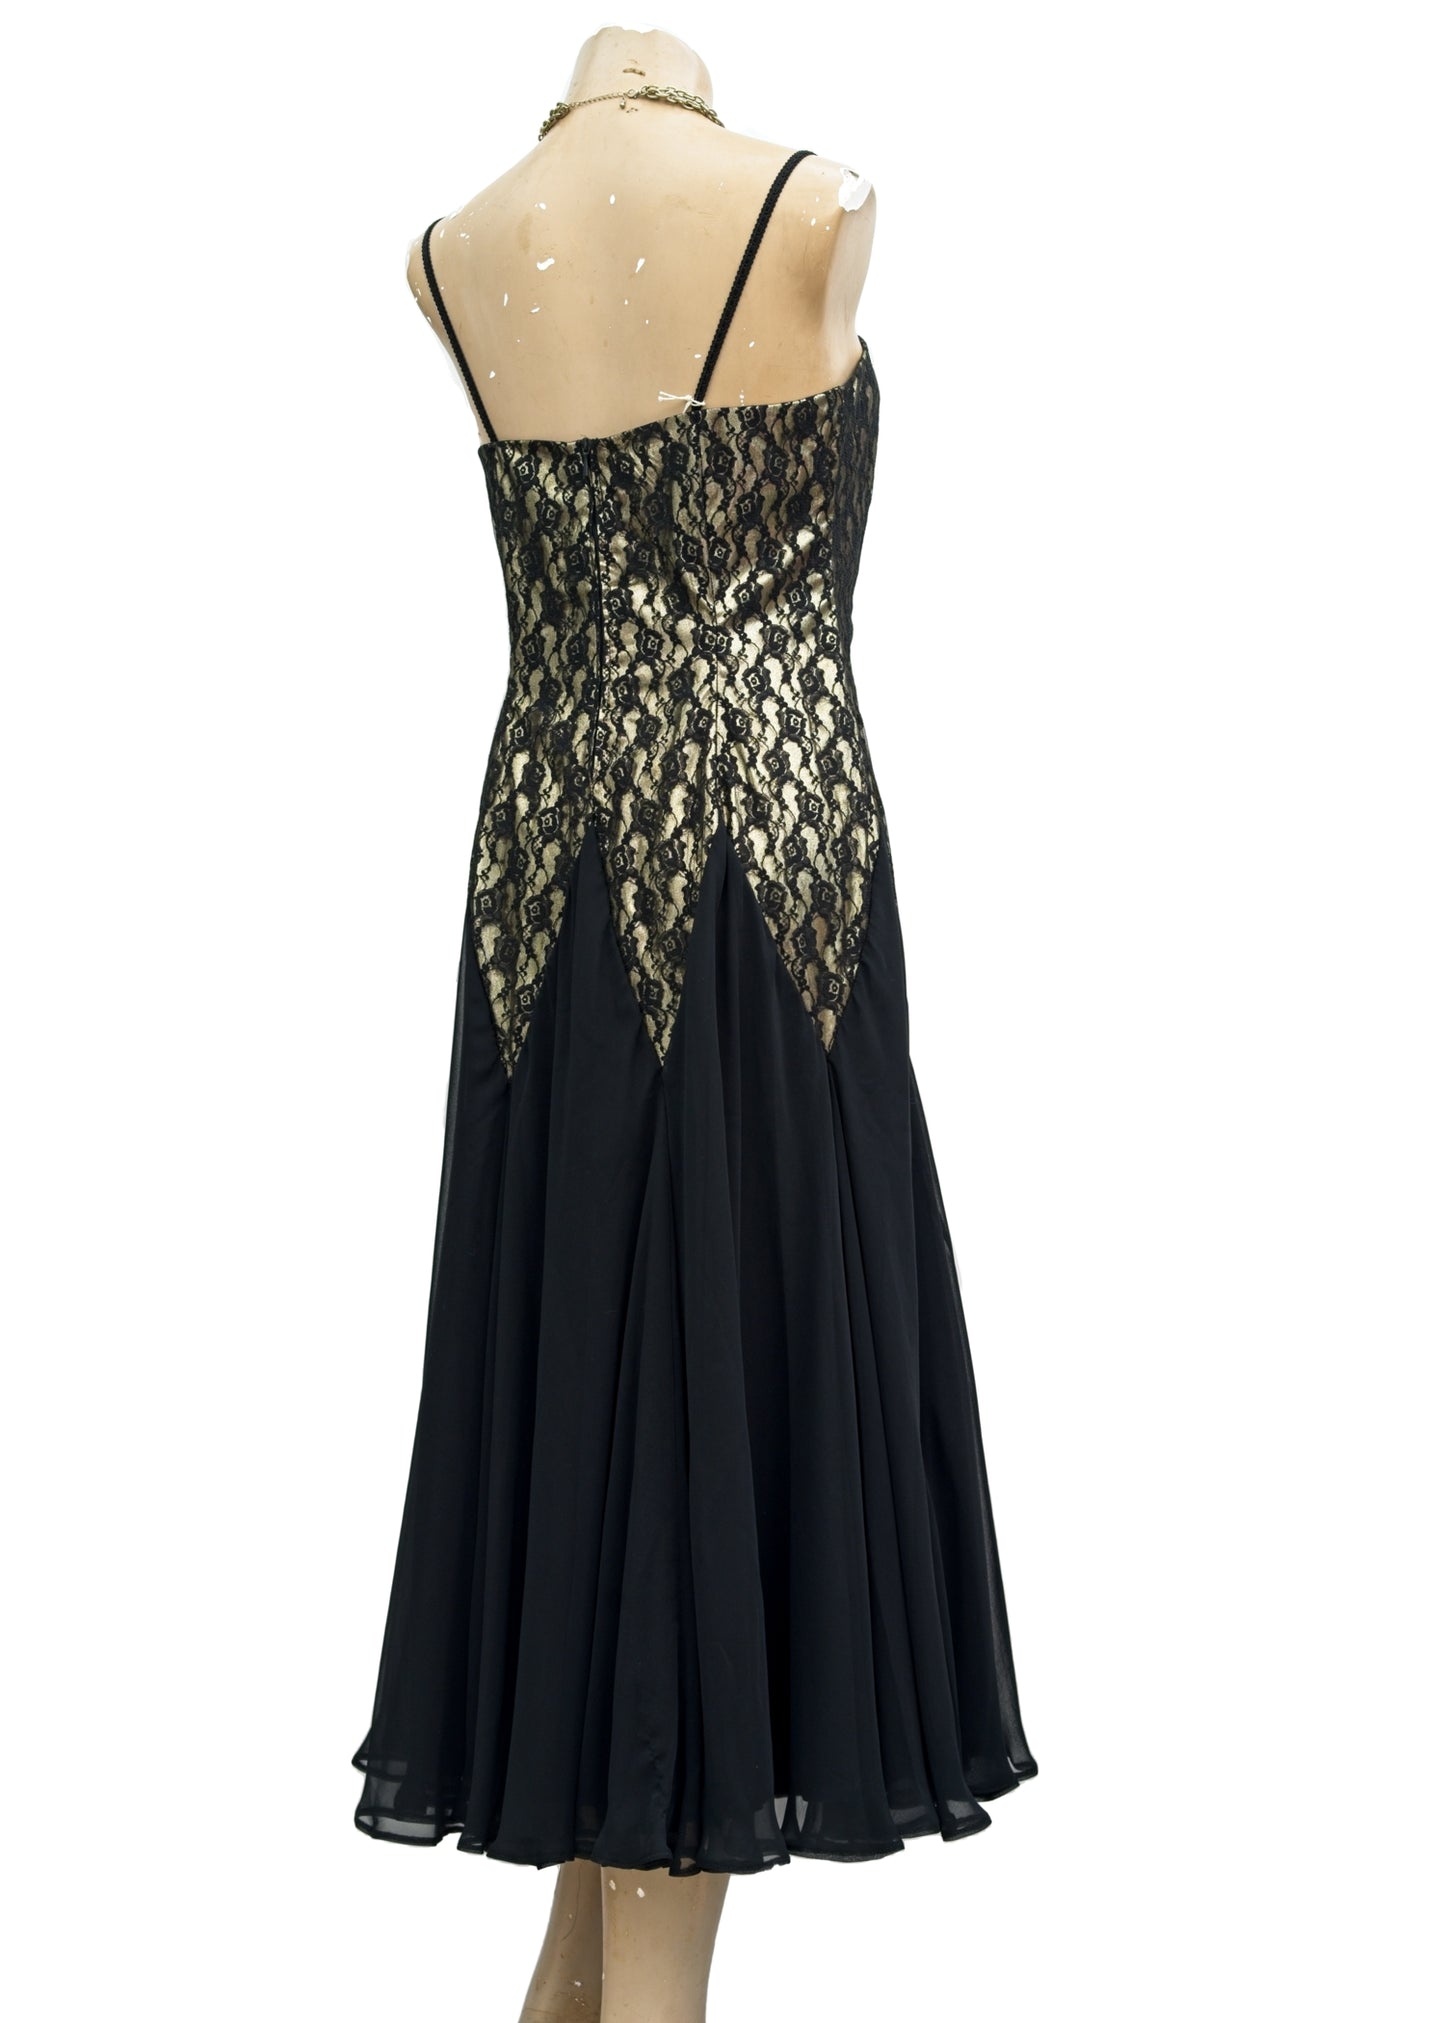 Vintage Gold and Black Lace • Chiffon Cocktail Party Dress • Jane Paris